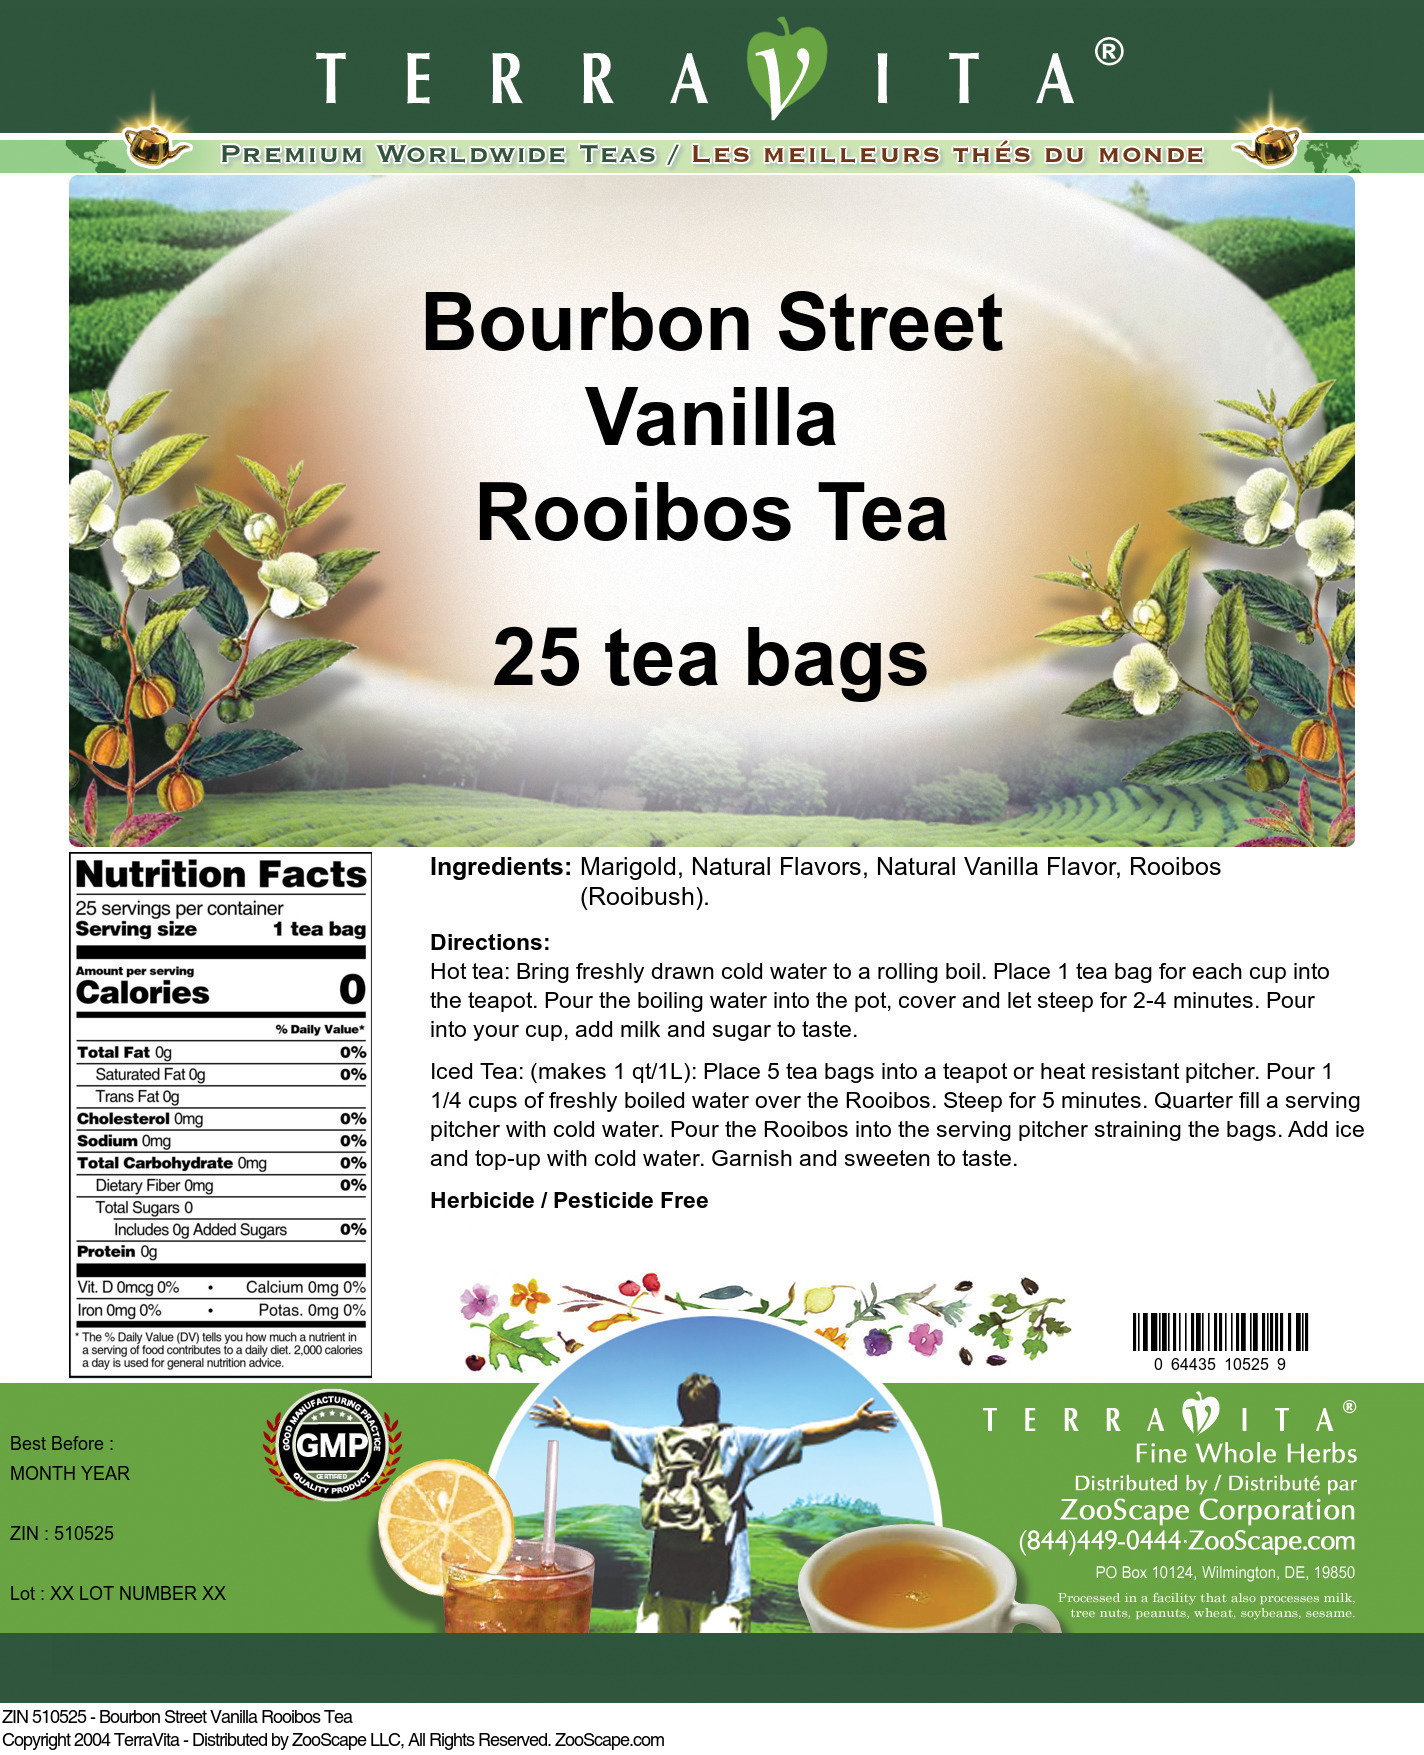 Bourbon Street Vanilla Rooibos Tea - Label